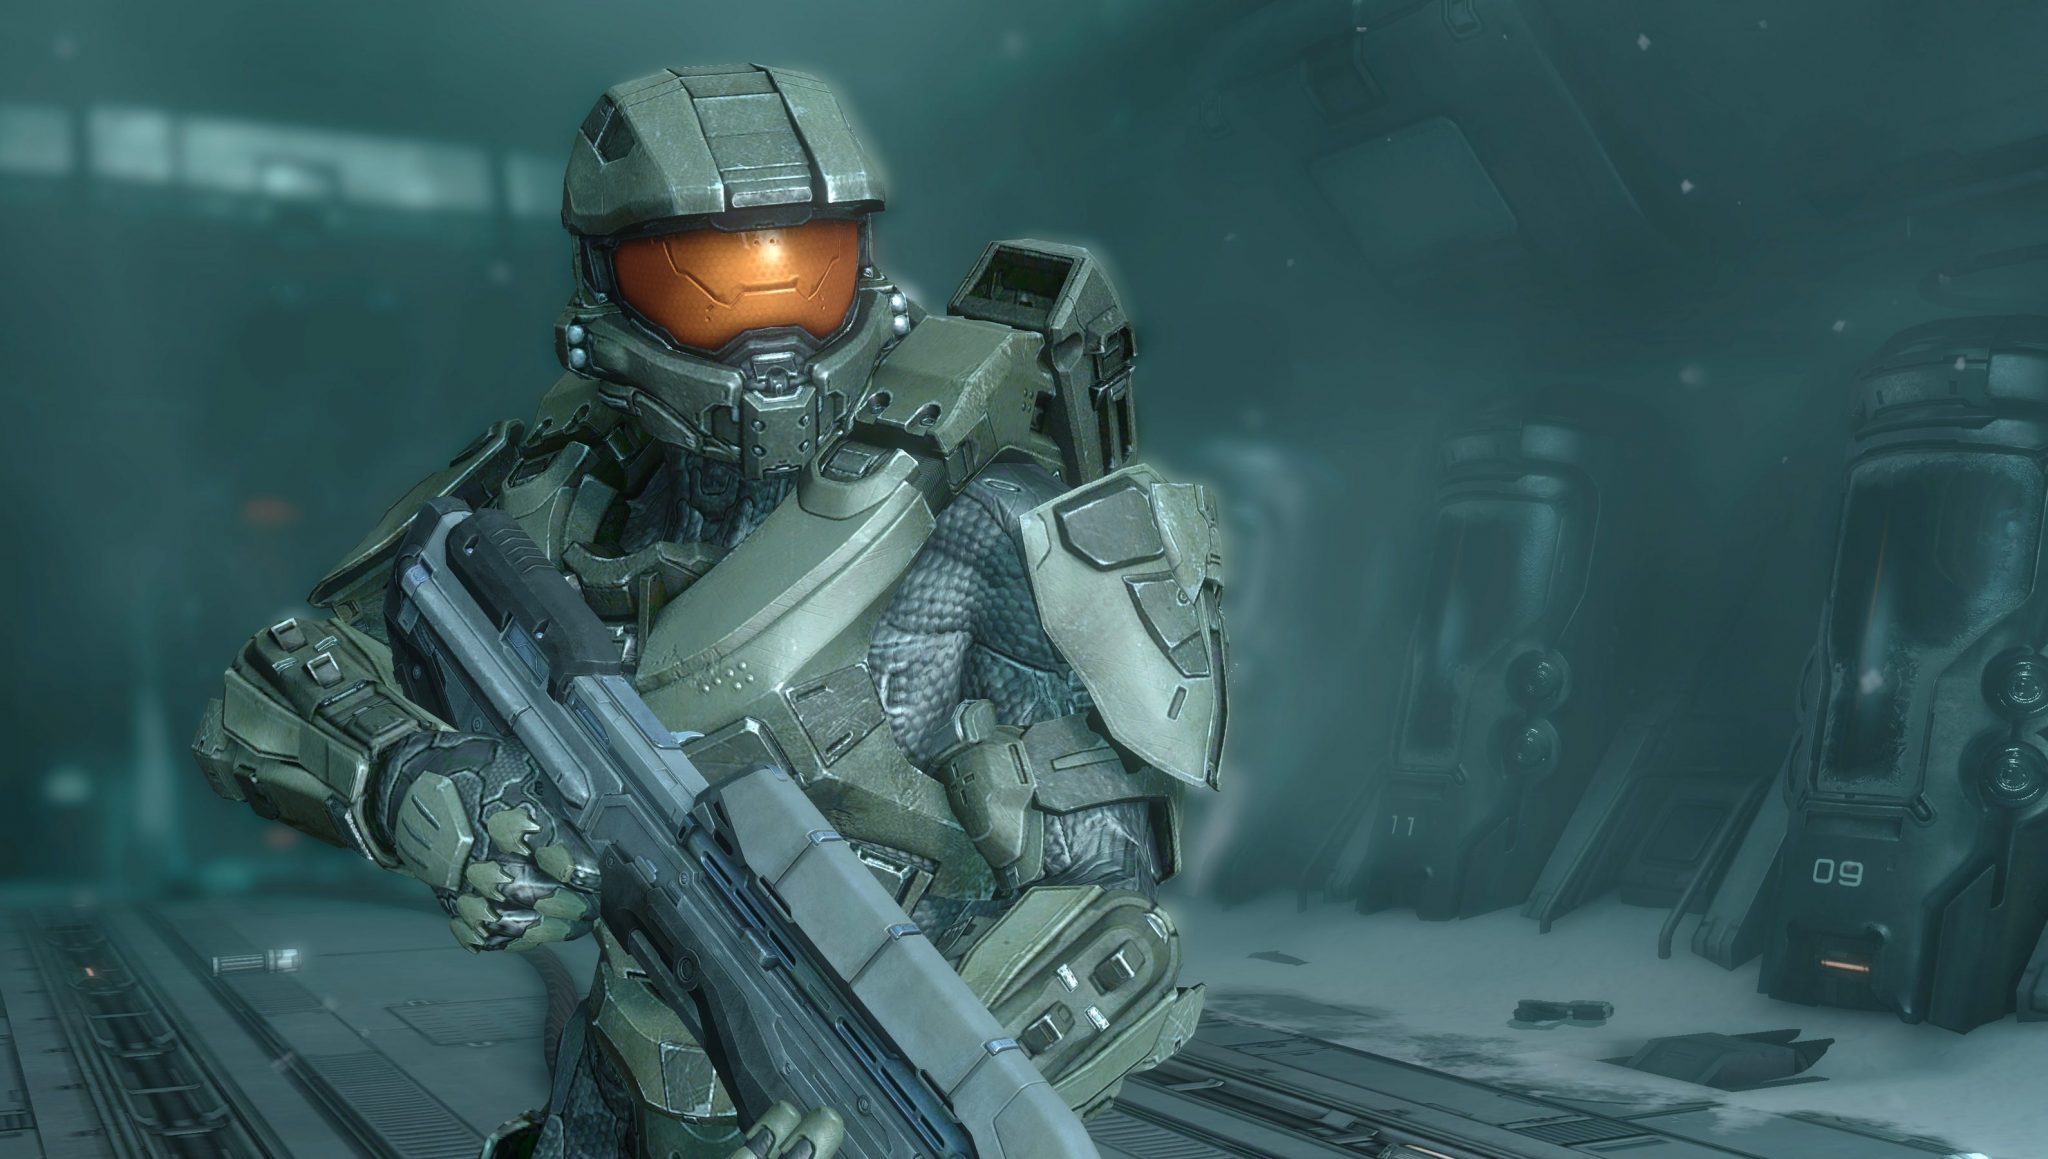 Halo 4 entra a far parte di Halo The Master Chief Collection settimana prossima